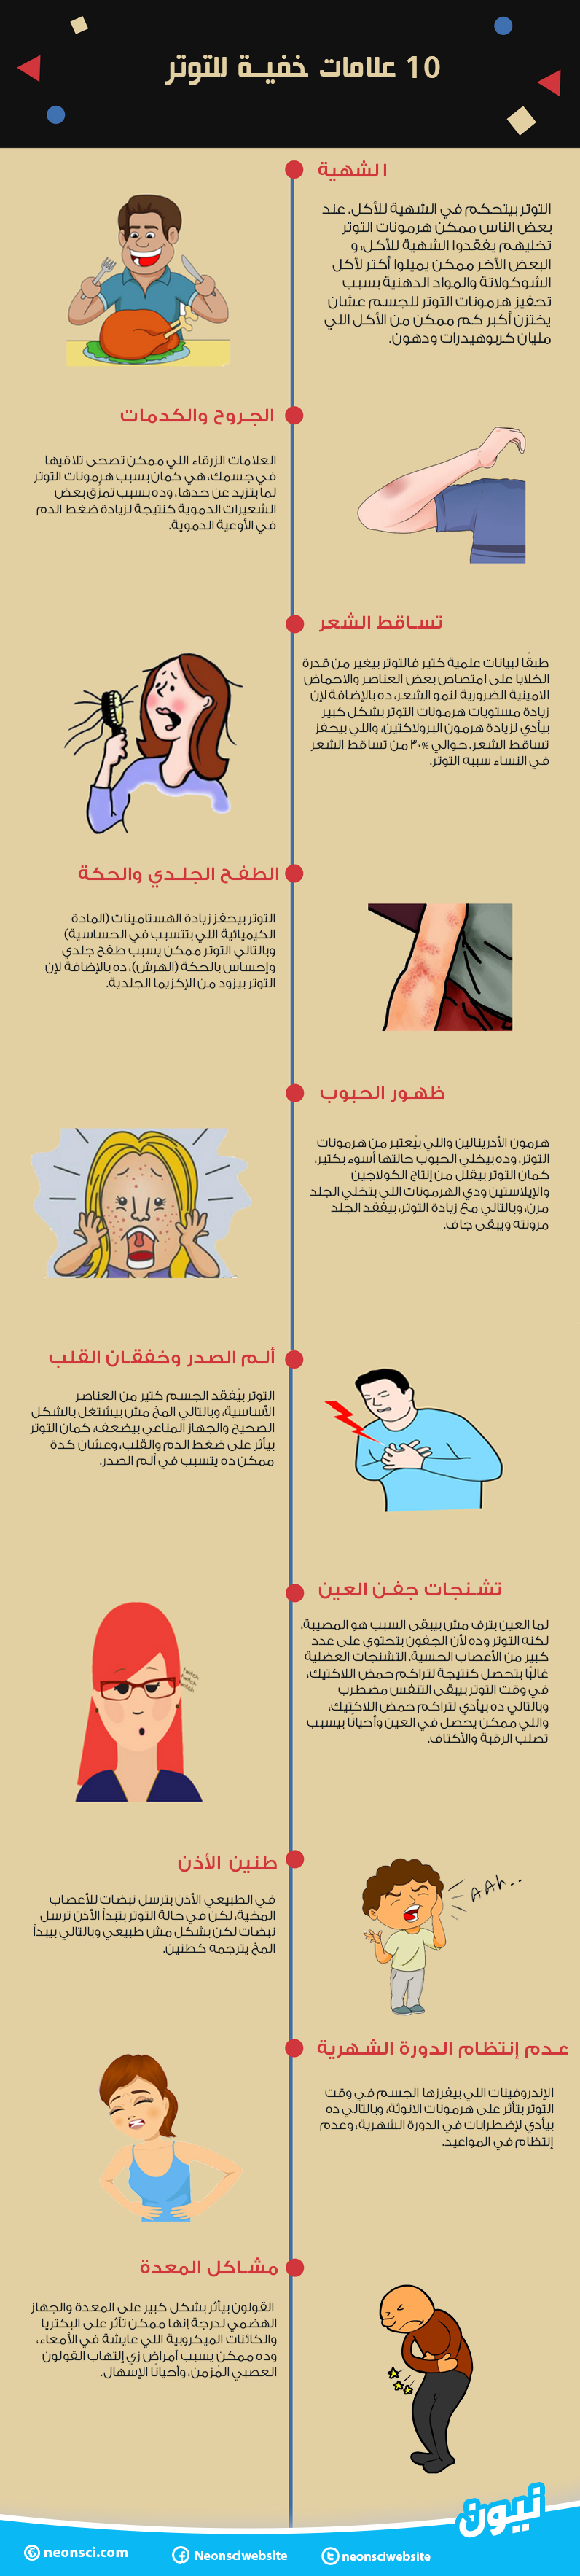 أعراض التوتر